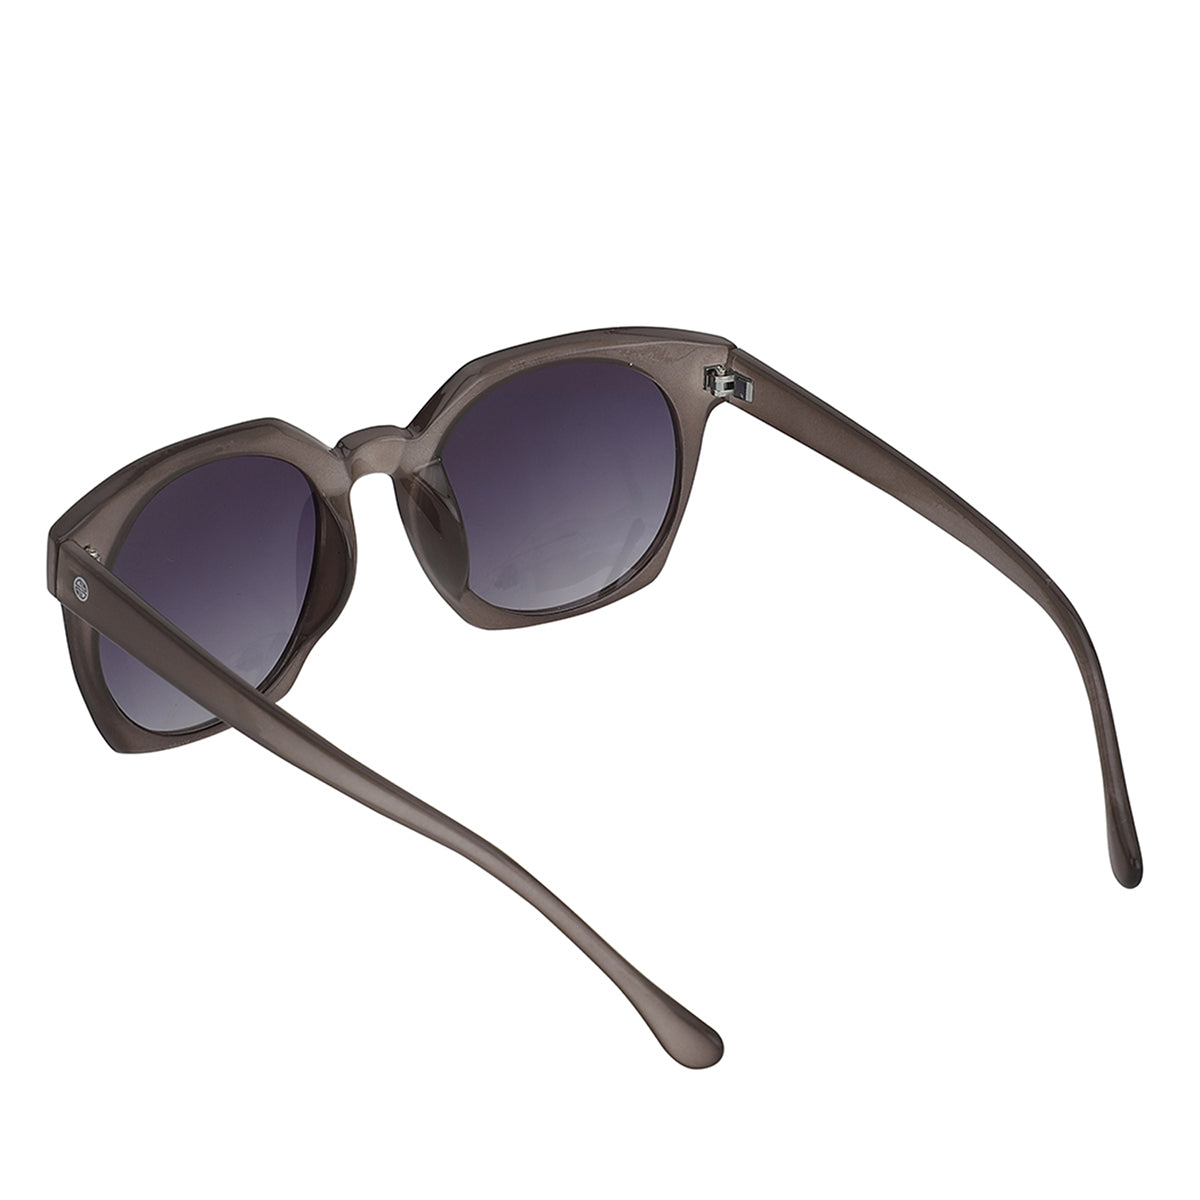 Royal Son Oversized Square Grey Polarized Stylish Fashion Women Sunglasses  – CHIWM00156-C3 | Royalson